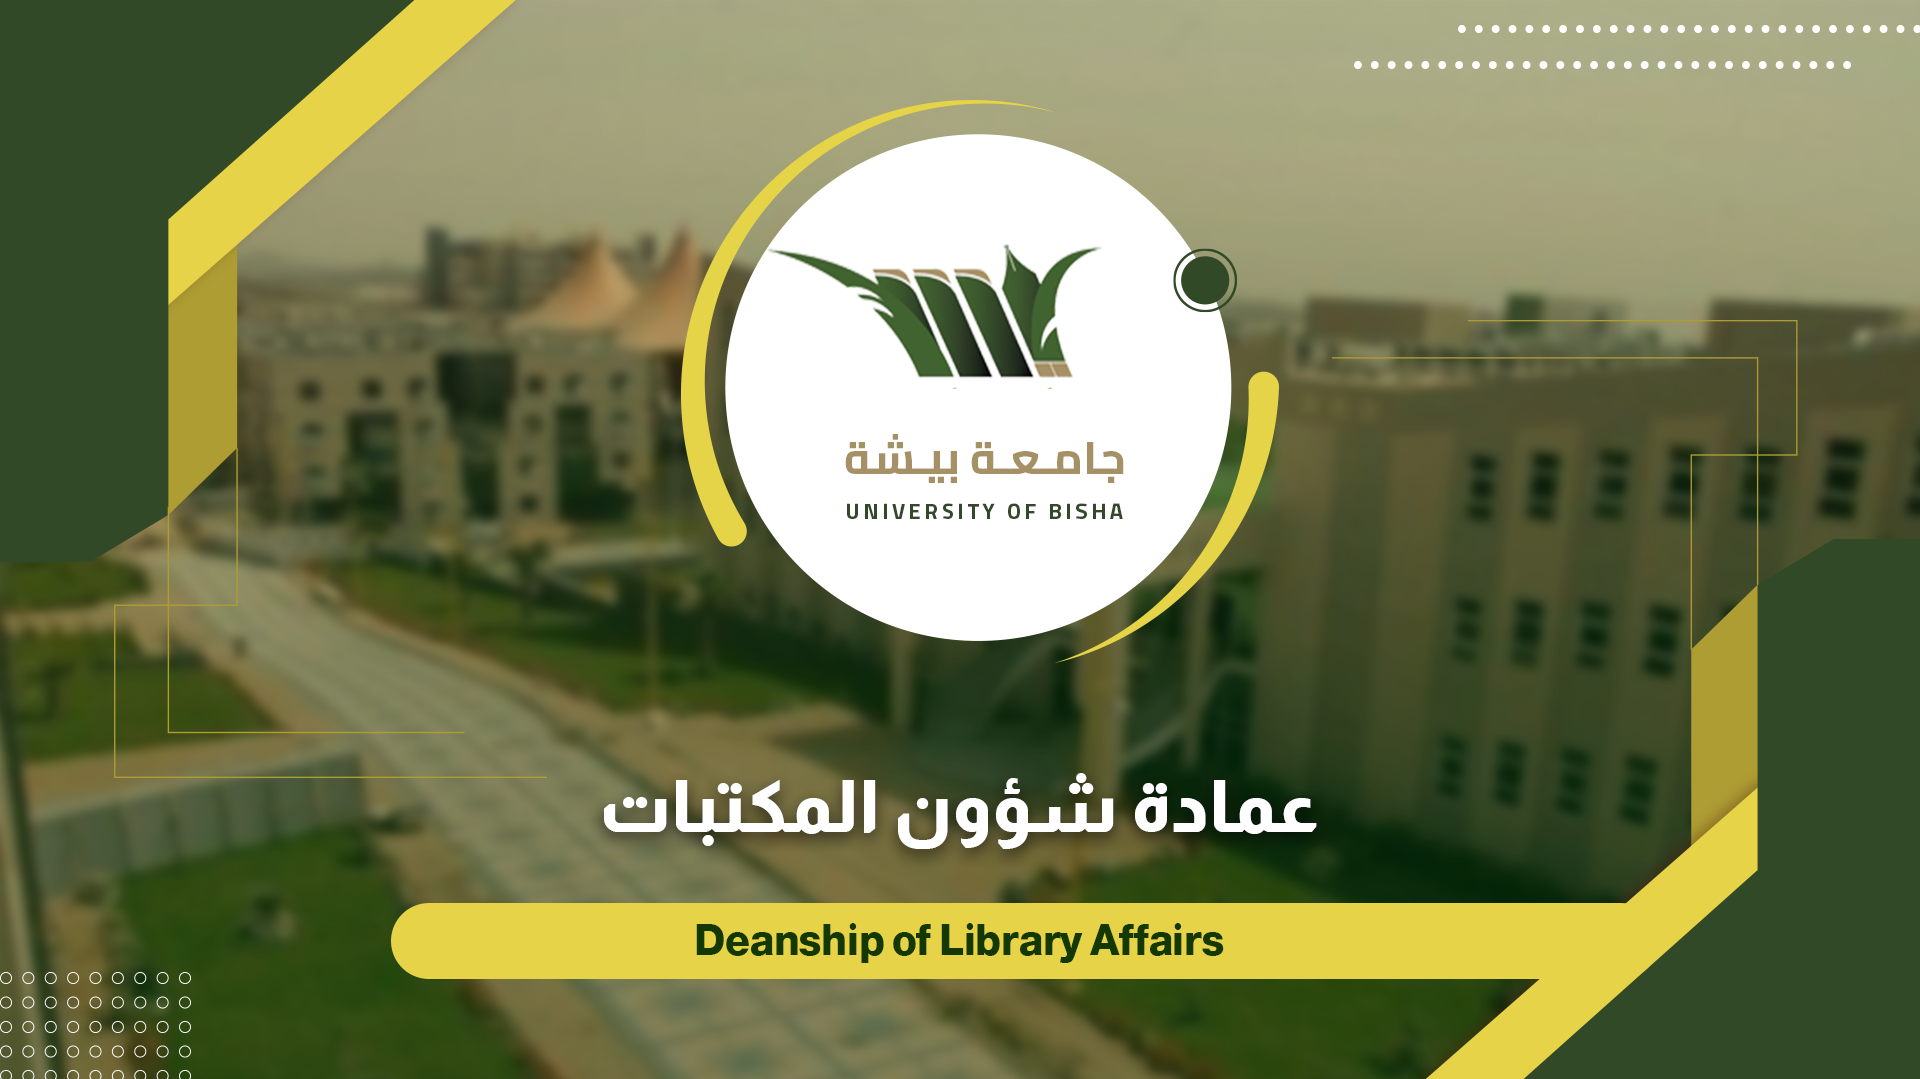  nullعمادة شؤون المكتبات تشارك في معرض الكتاب الرابع بجامعة الباحة 